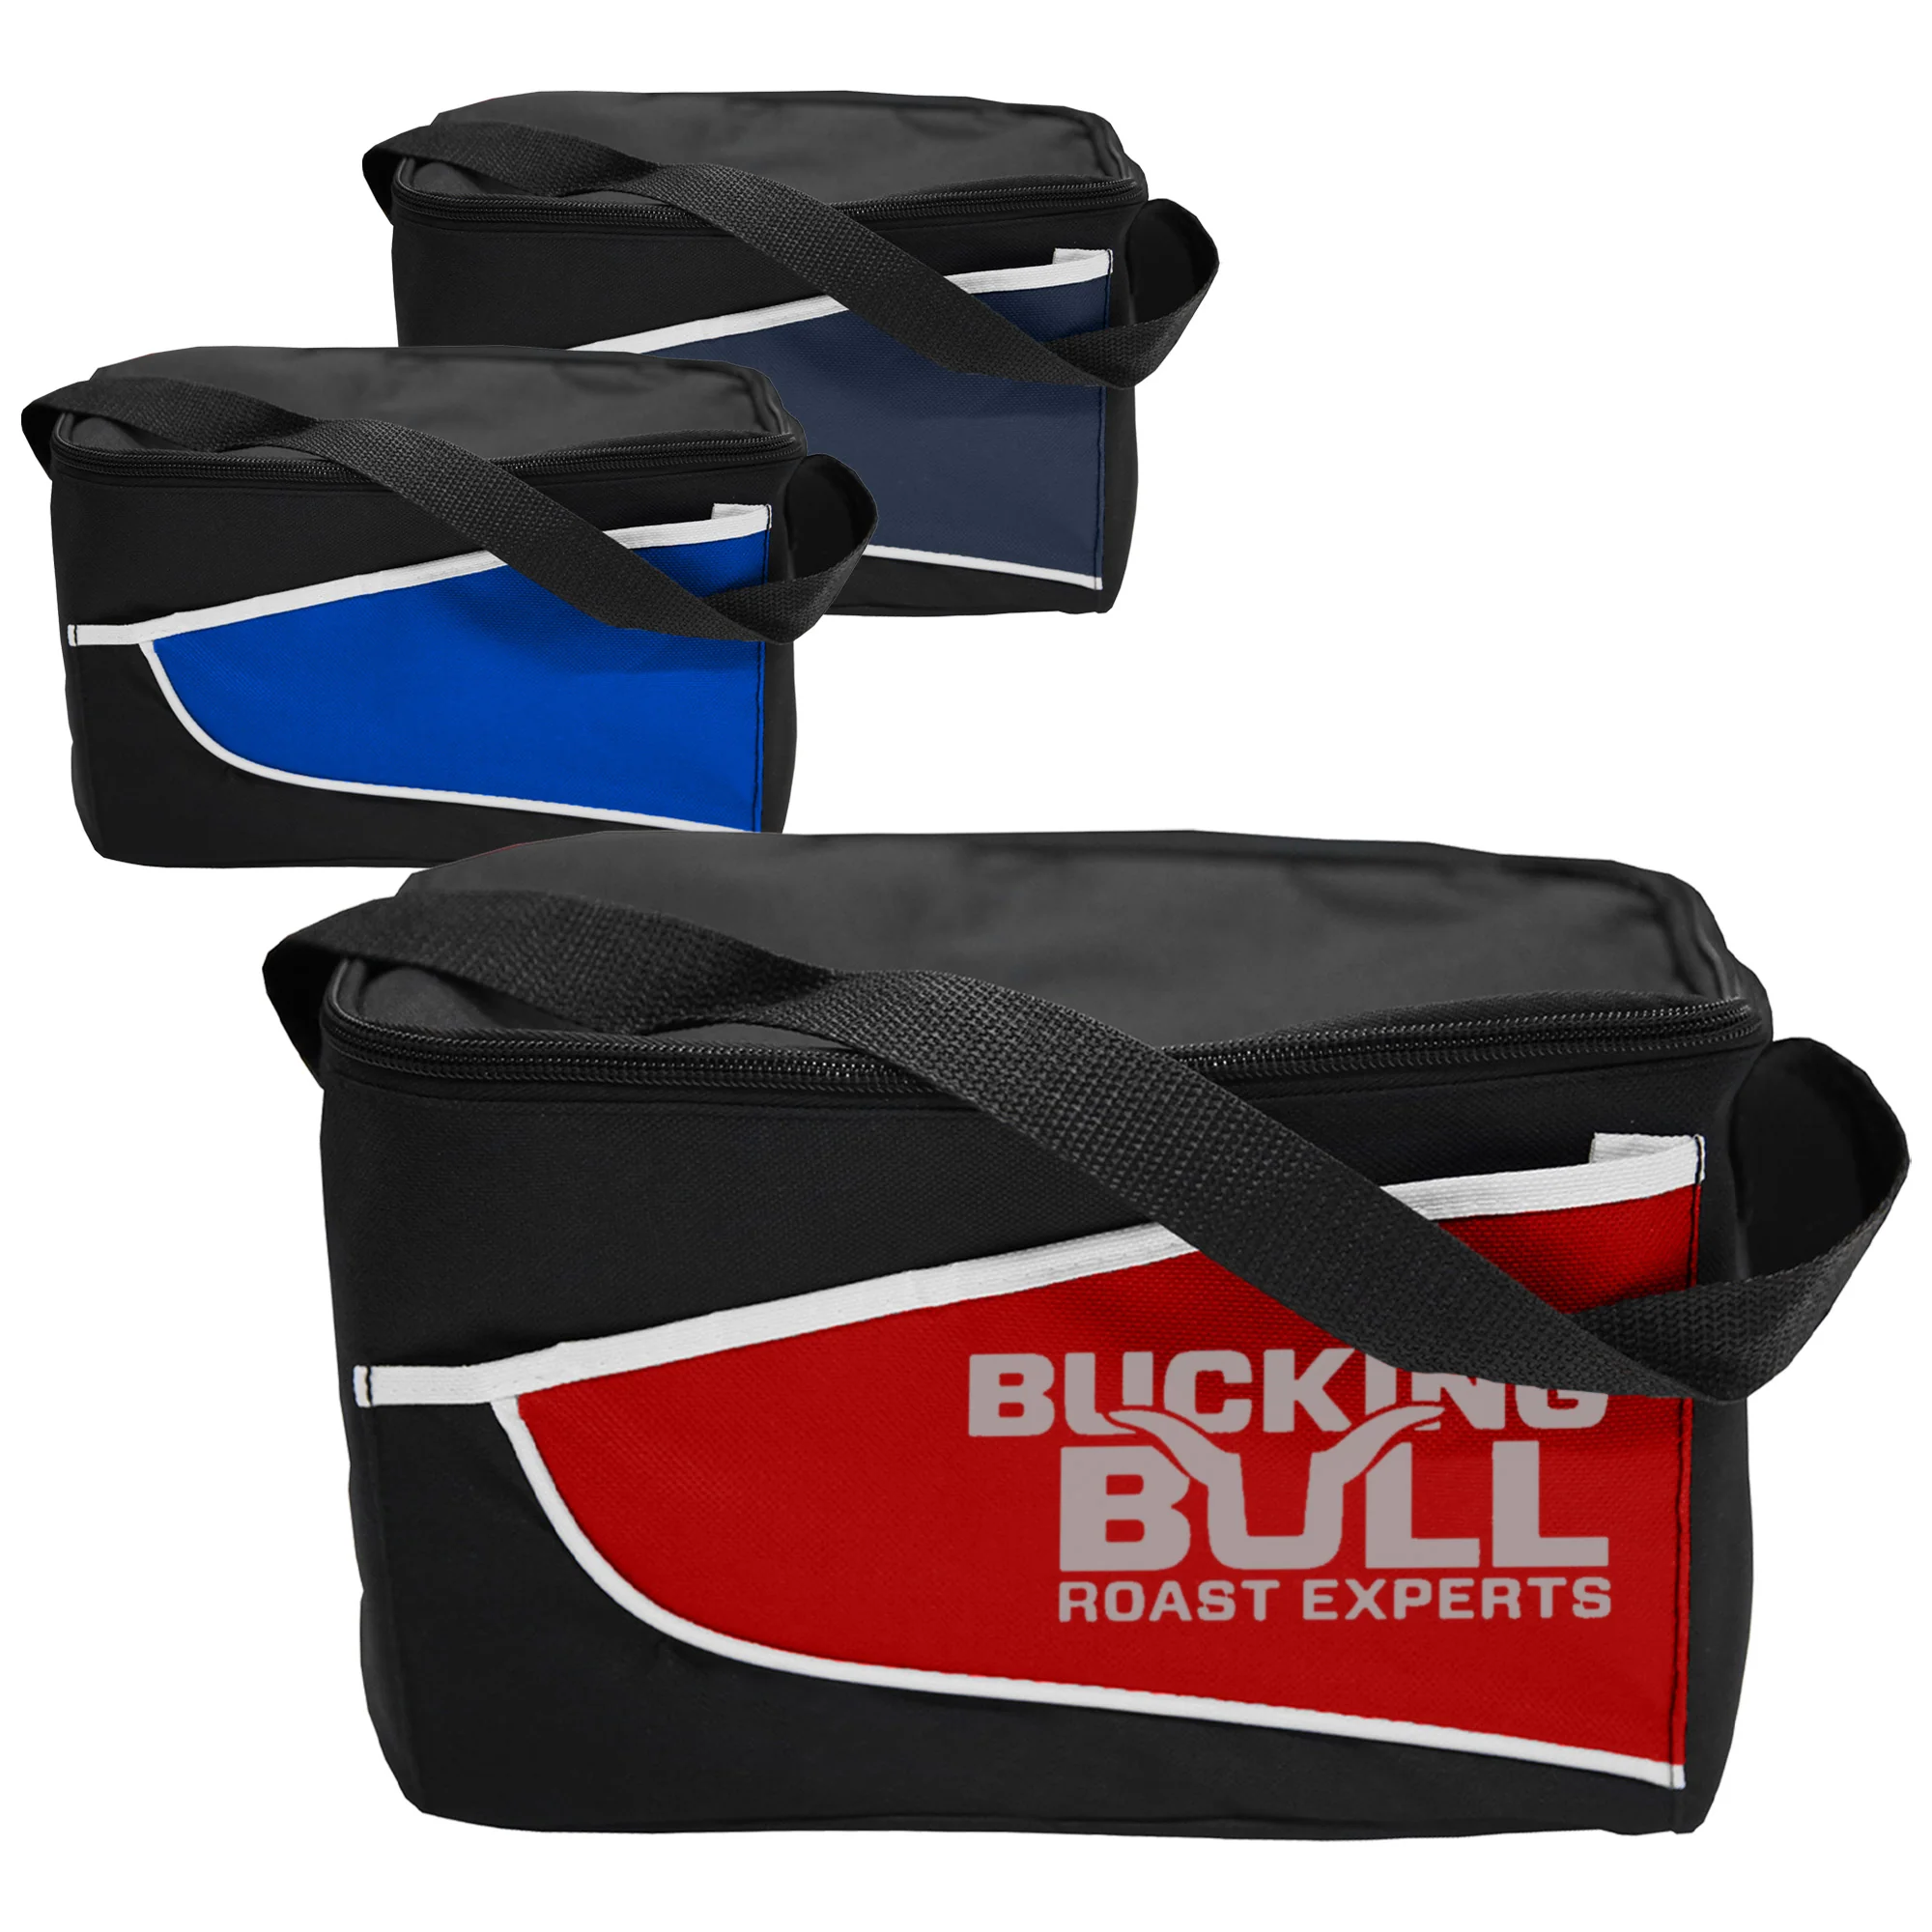 Custom Made Nylon Cooler Bag Online Coloured in Perth Australia